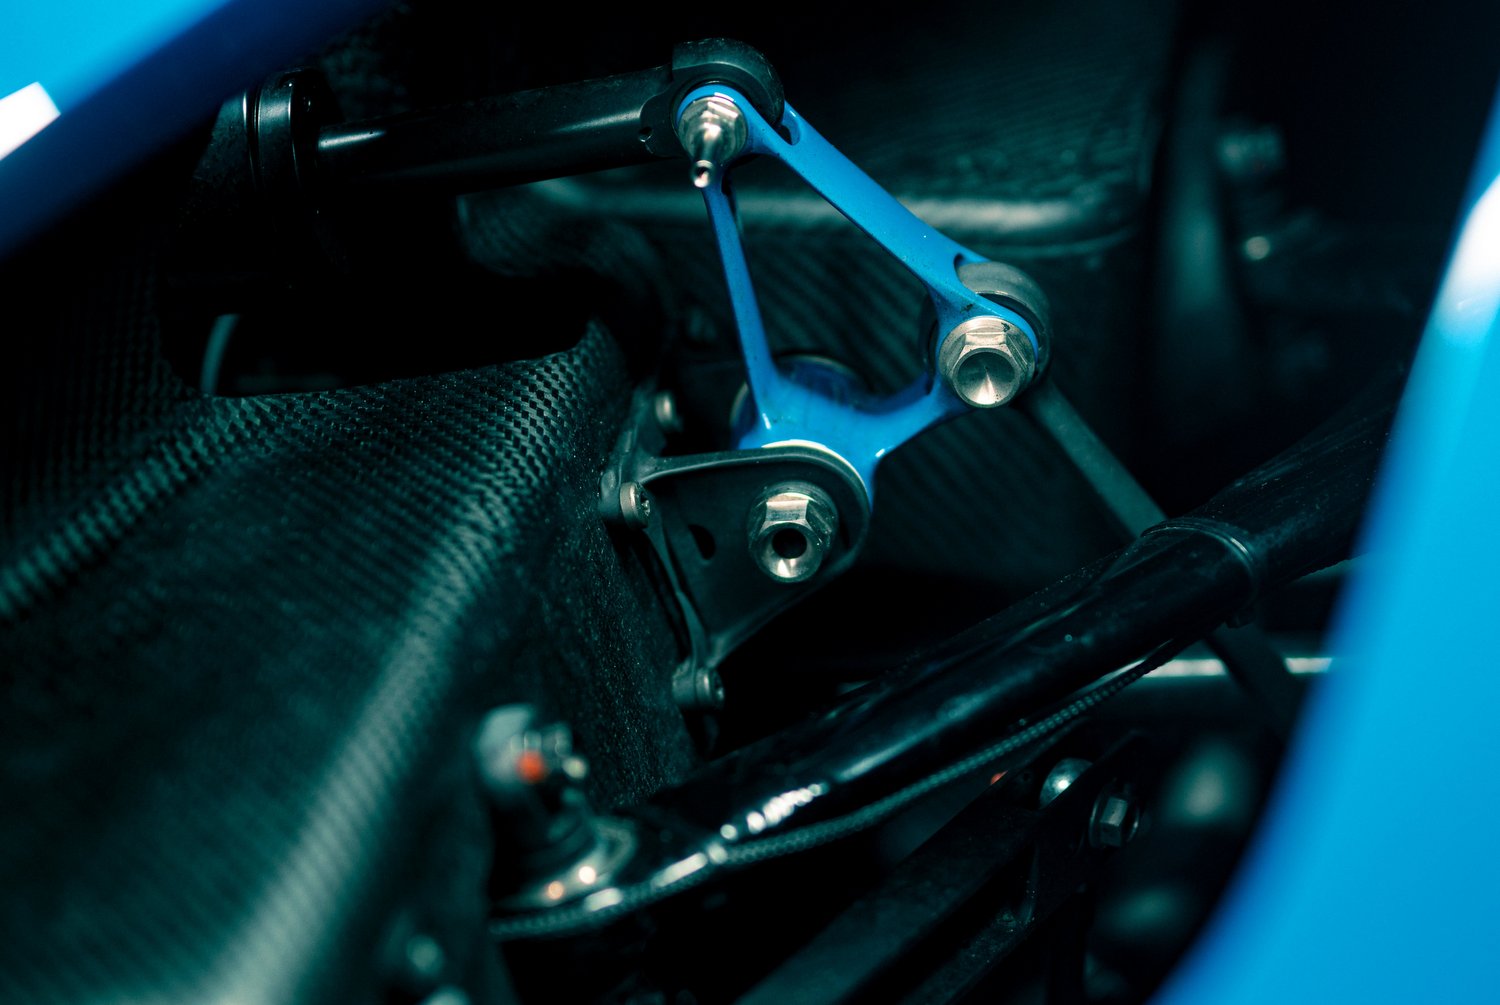 Libabőrös burkolat teszi áramvonalasabbá a Bugatti versenyautóját 7